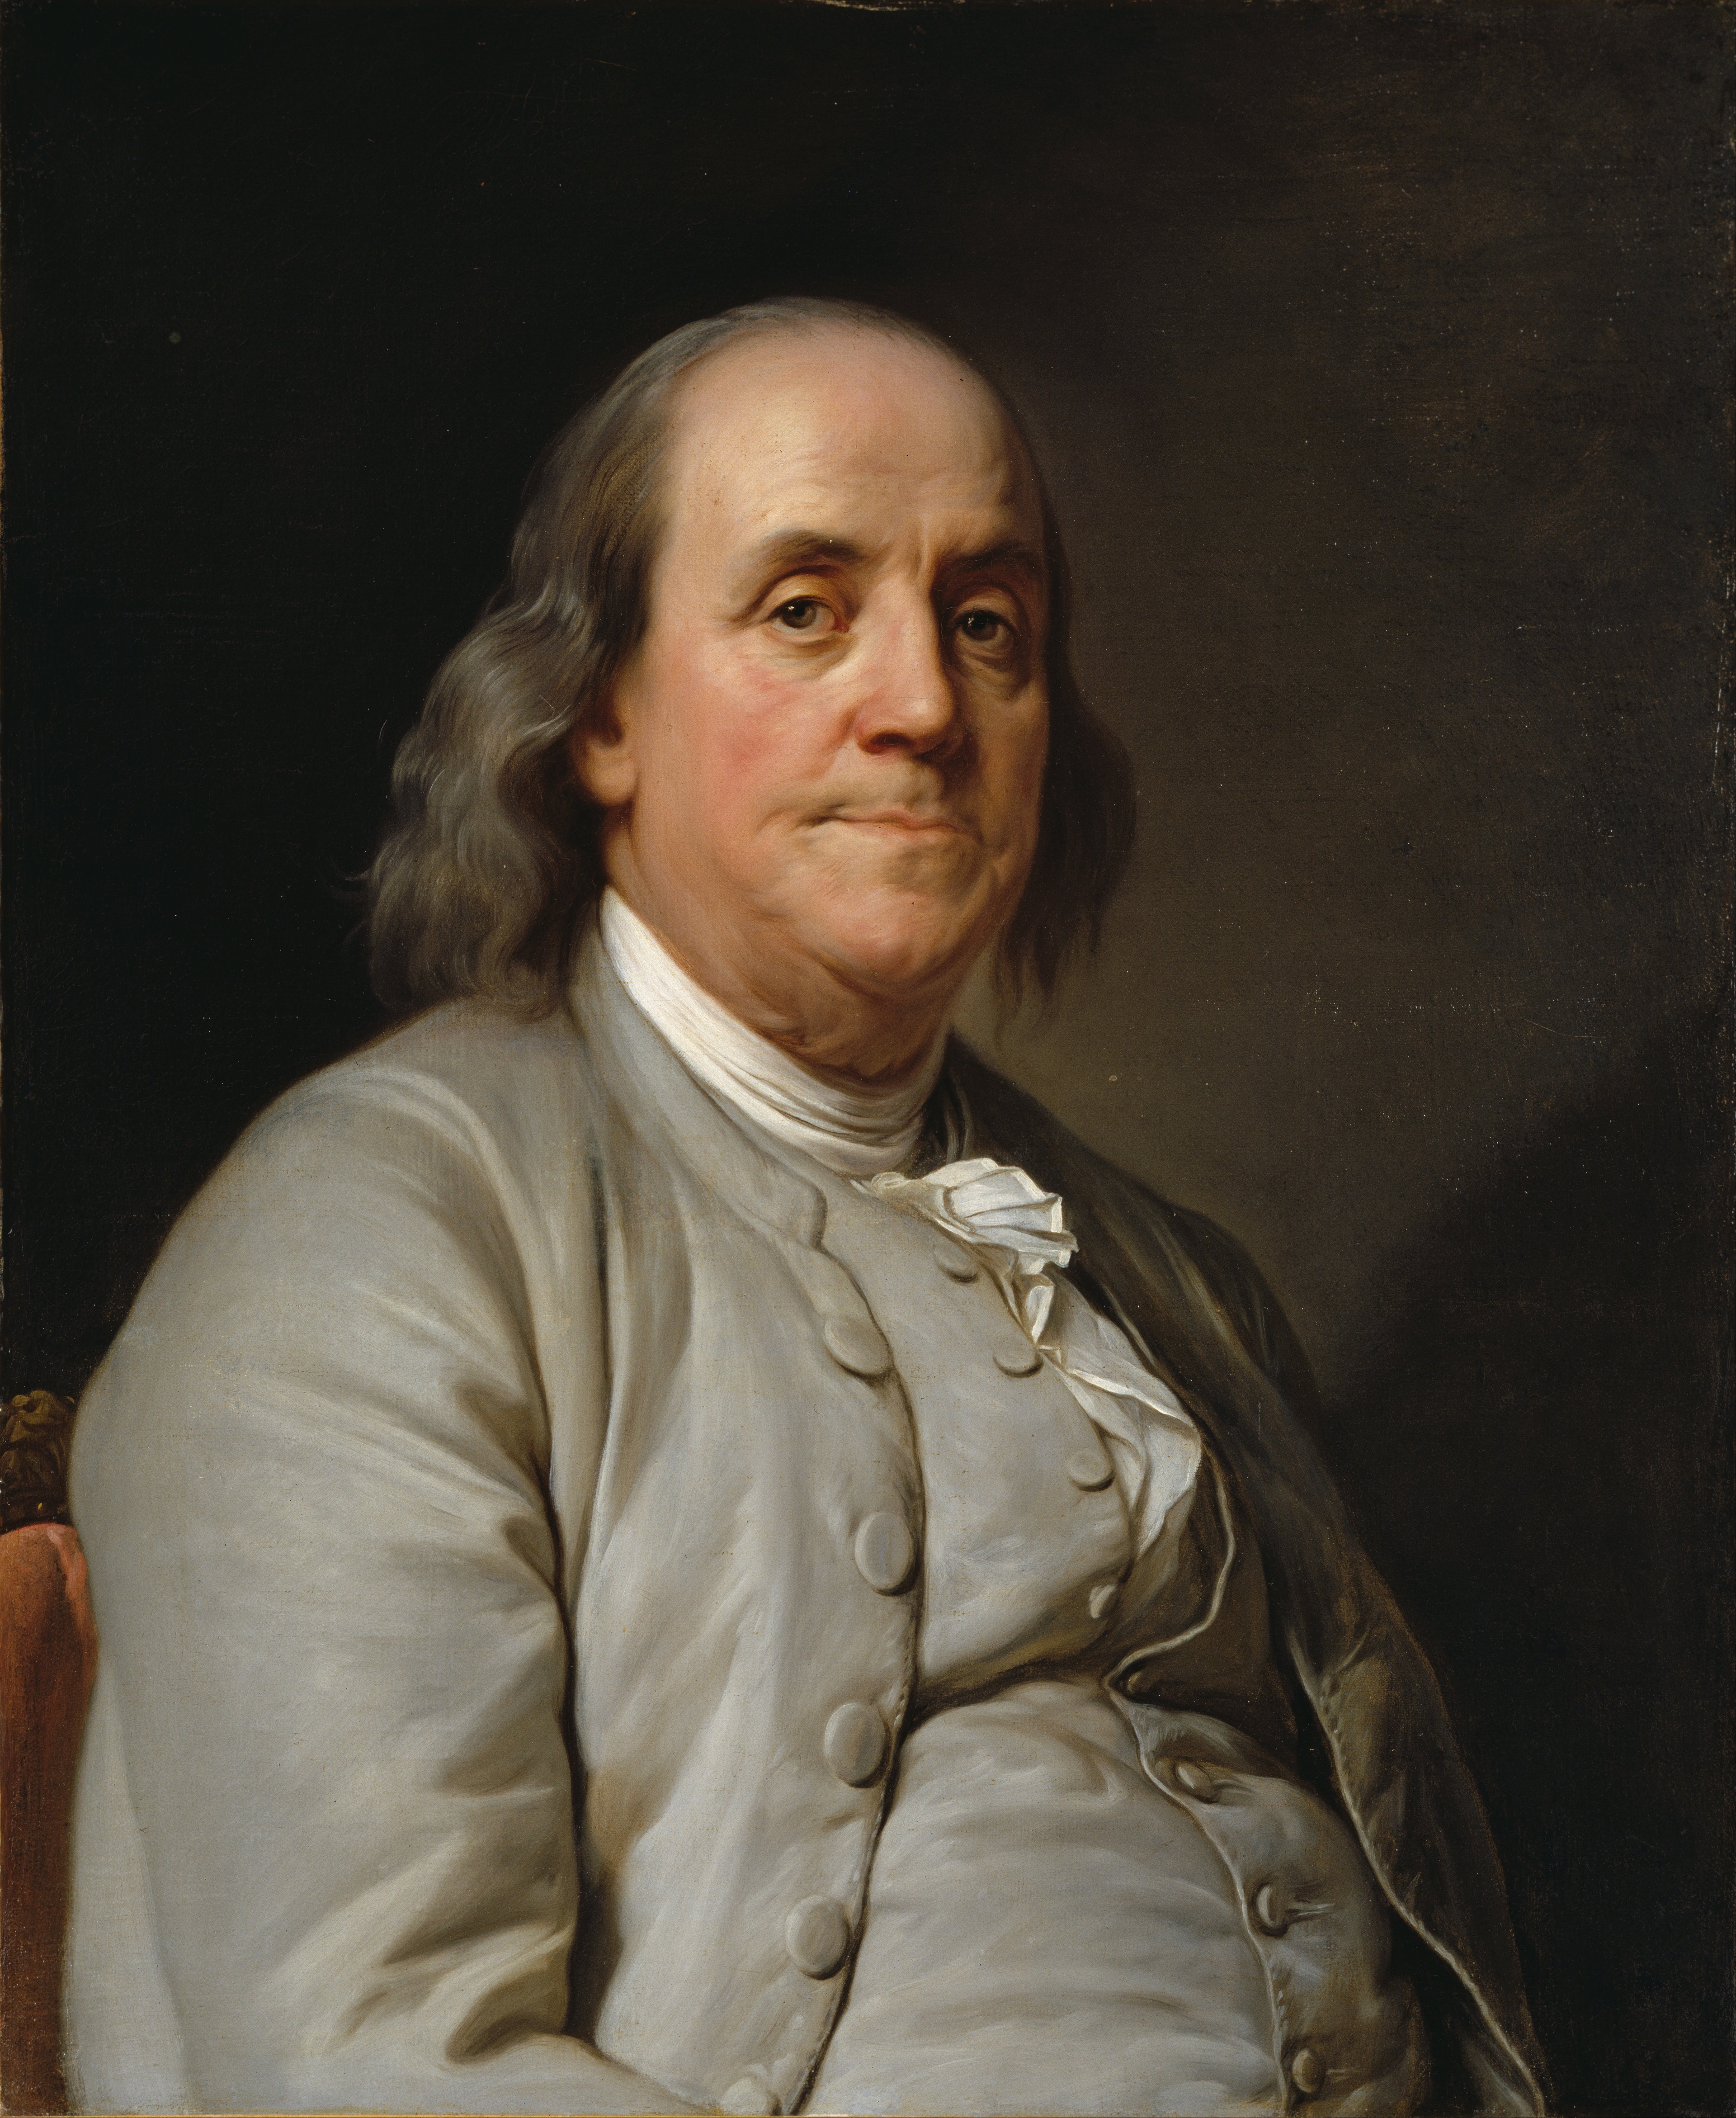 auteur Benjamin Franklin de la citation Si vous voulez que quelque chose soit fait, demandez à une personne occupée.